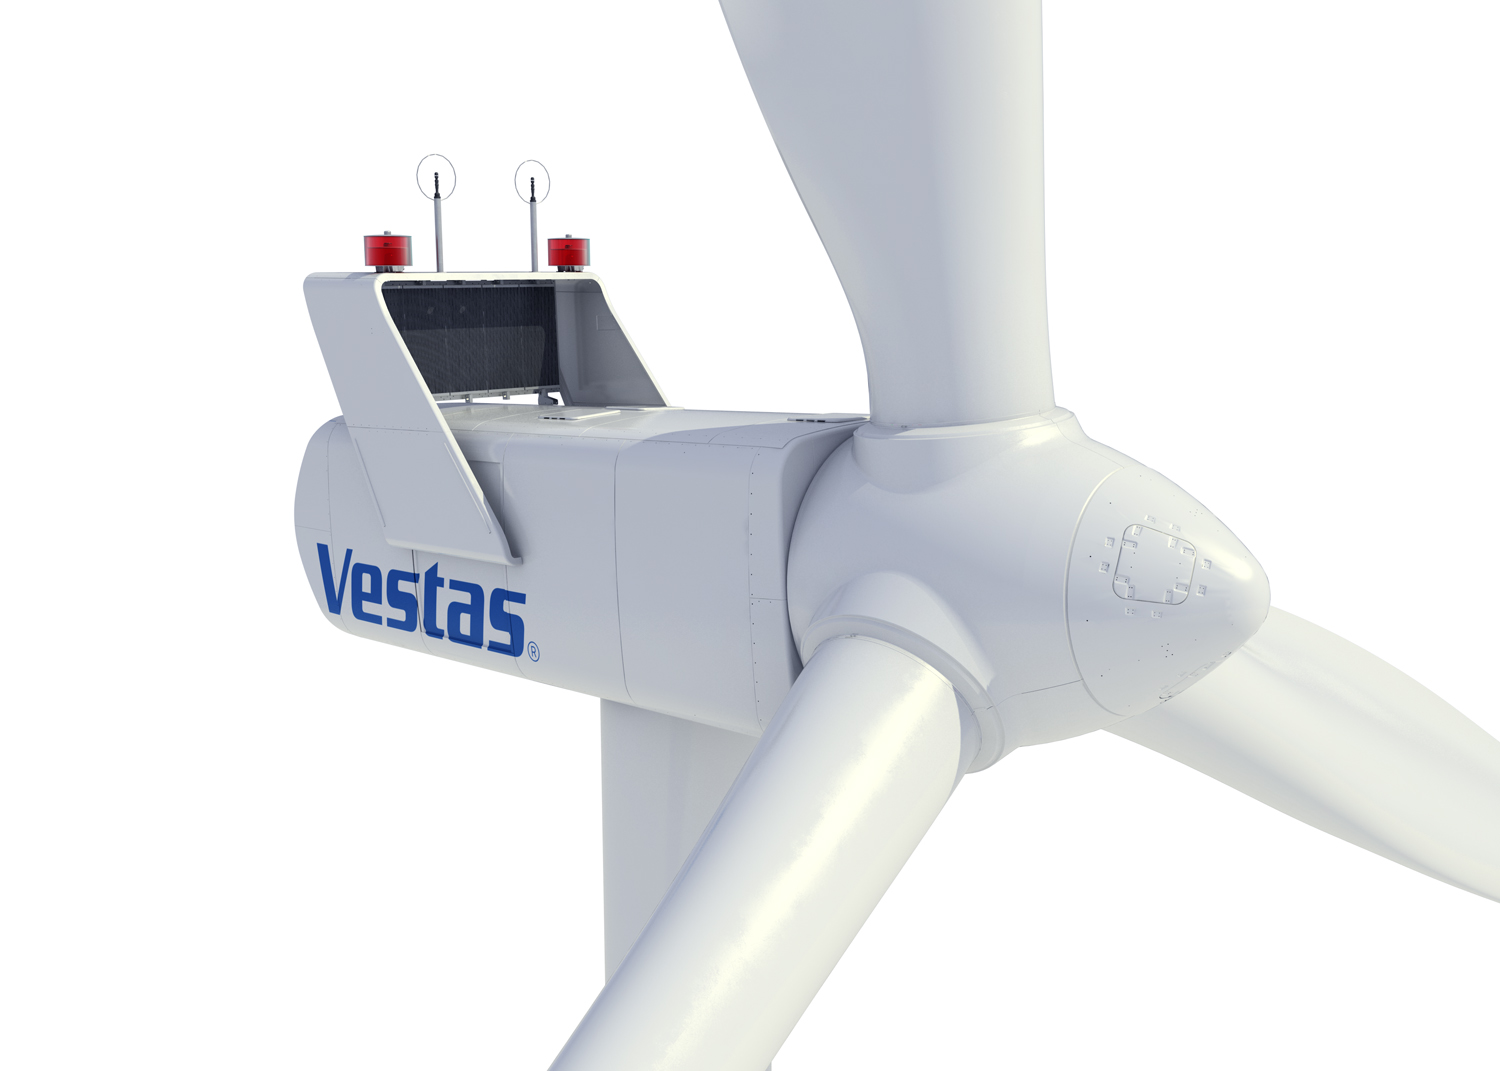 Eólica en México: Vestas vende 30 aerogeneradores para un parque eólico